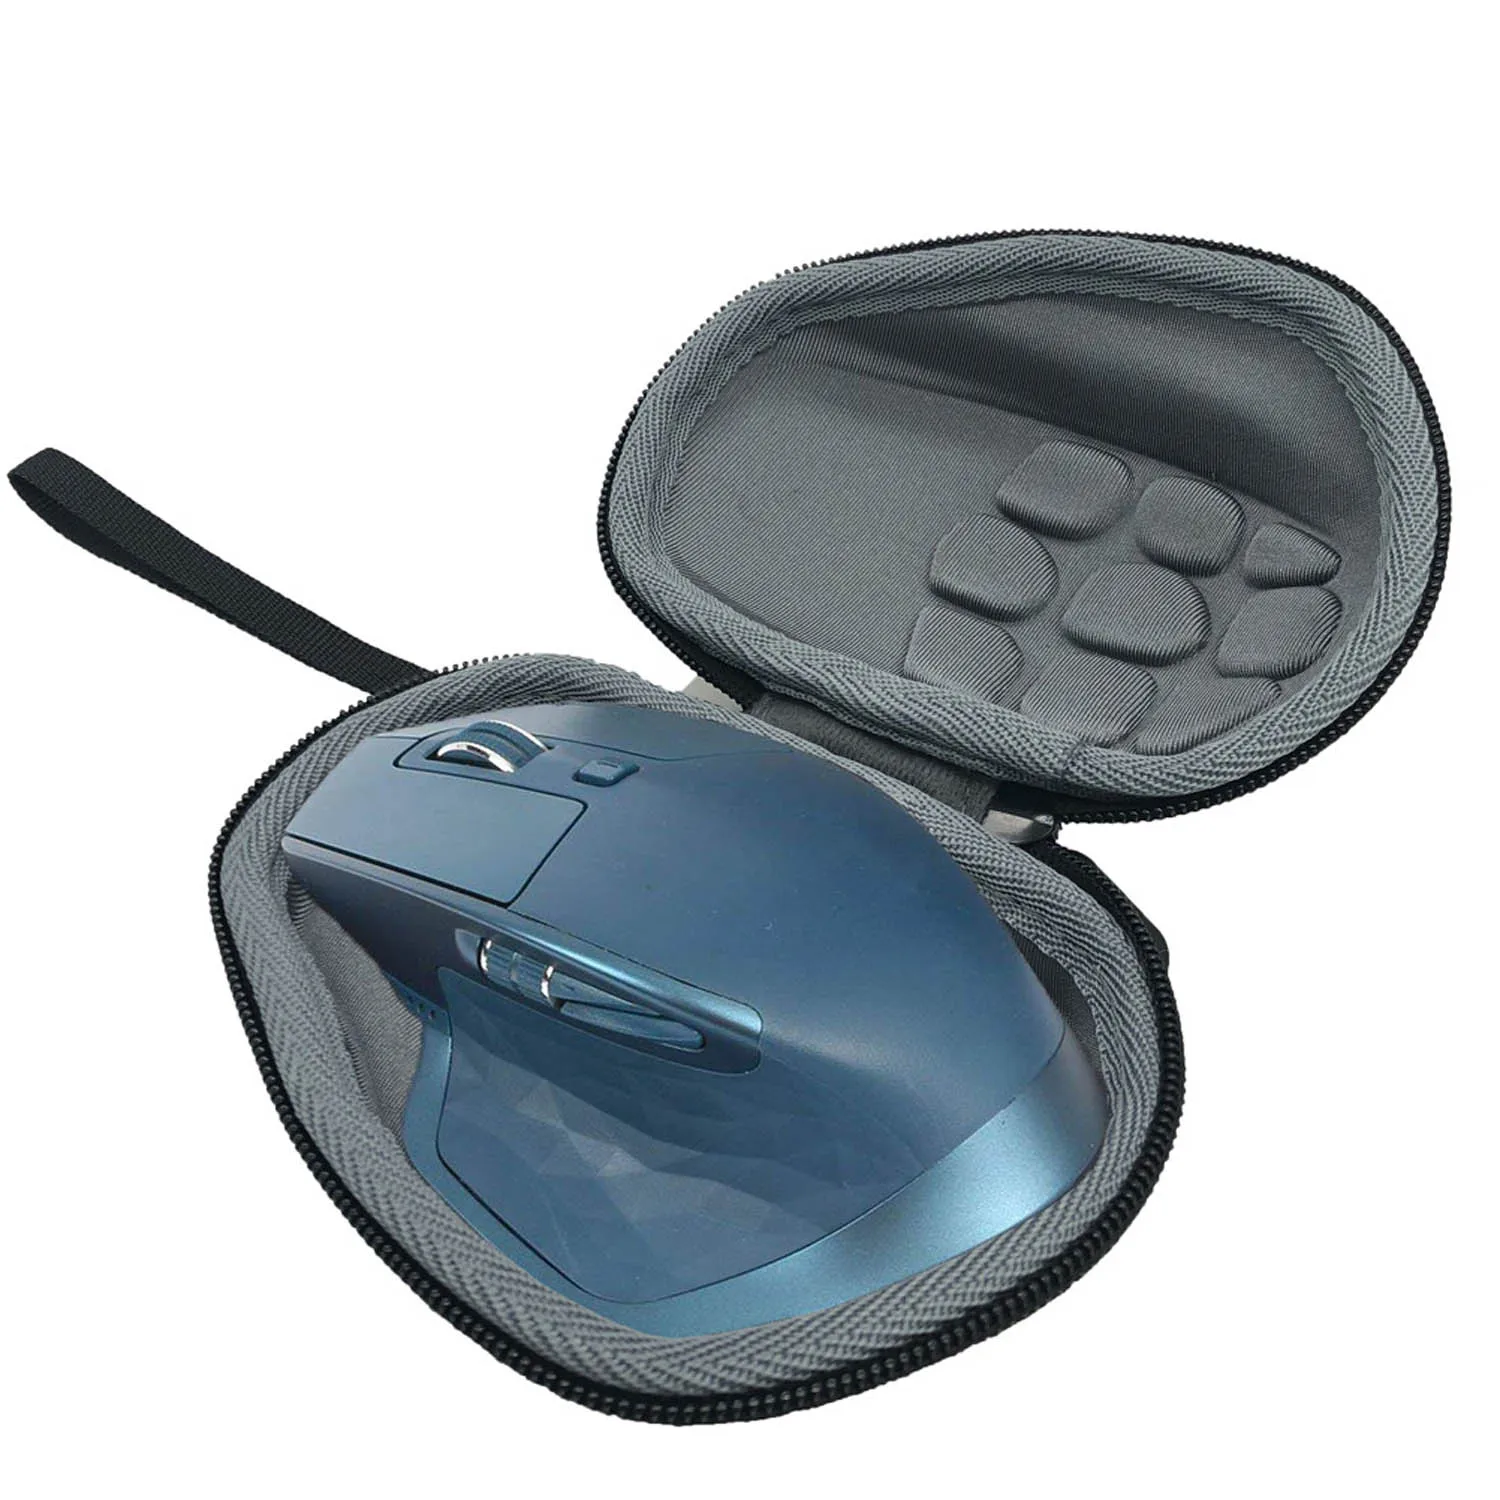 Besegad портативный водонепроницаемый чехол для кабеля, для хранения, защитная сумка-чехол, чехол для lotech MX Master/MX Master 2 S mouse